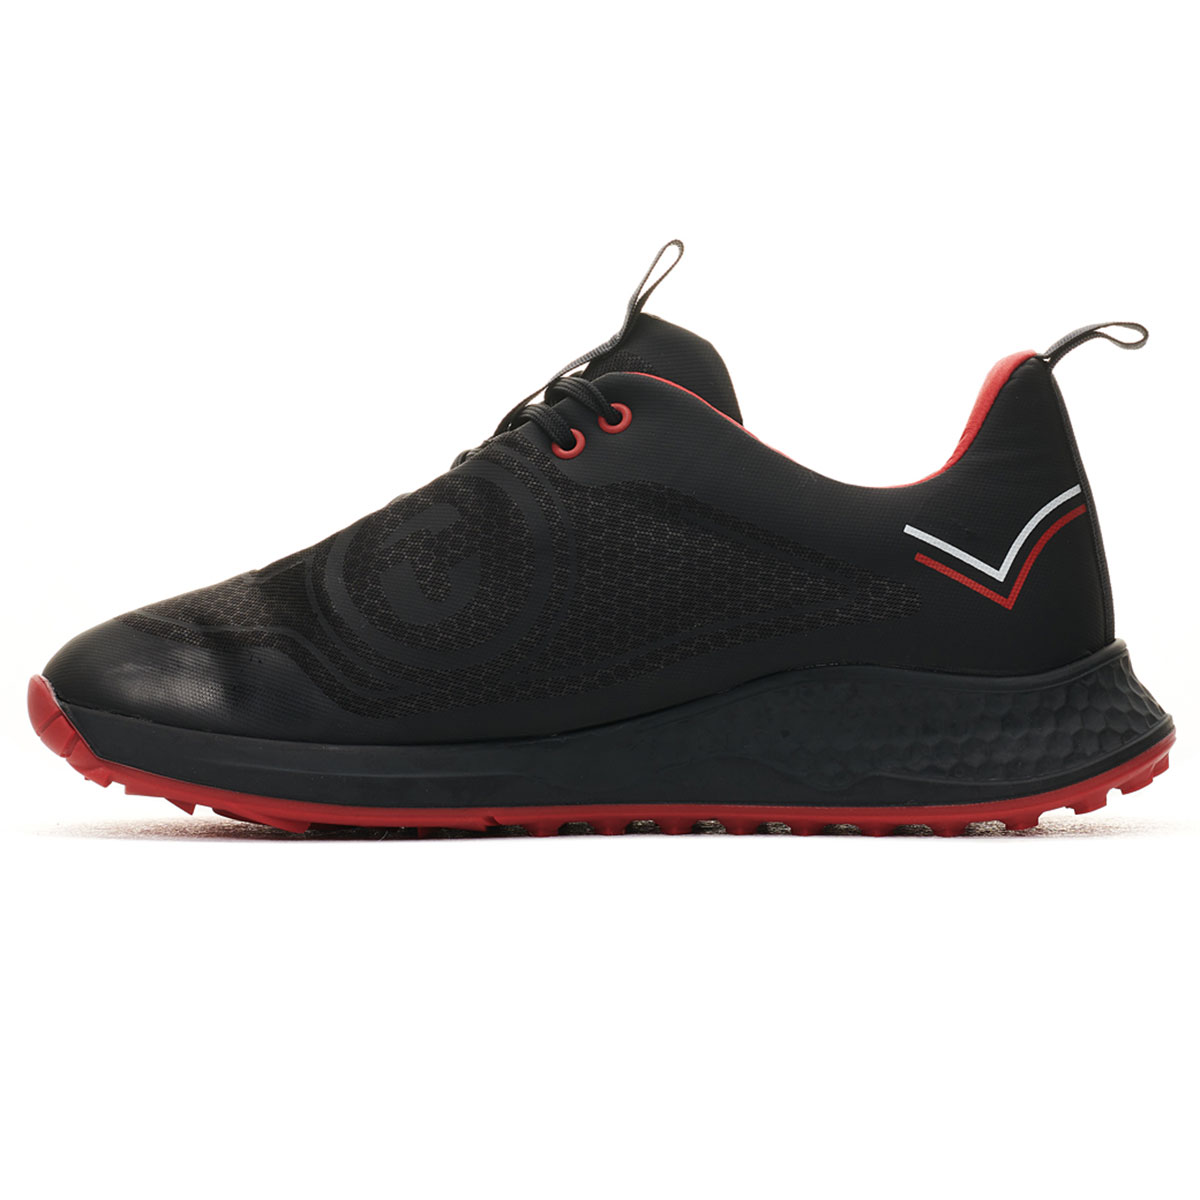 Duca Del Cosma Men's Tomcat Waterproof Spikeless Golf Shoes from ...